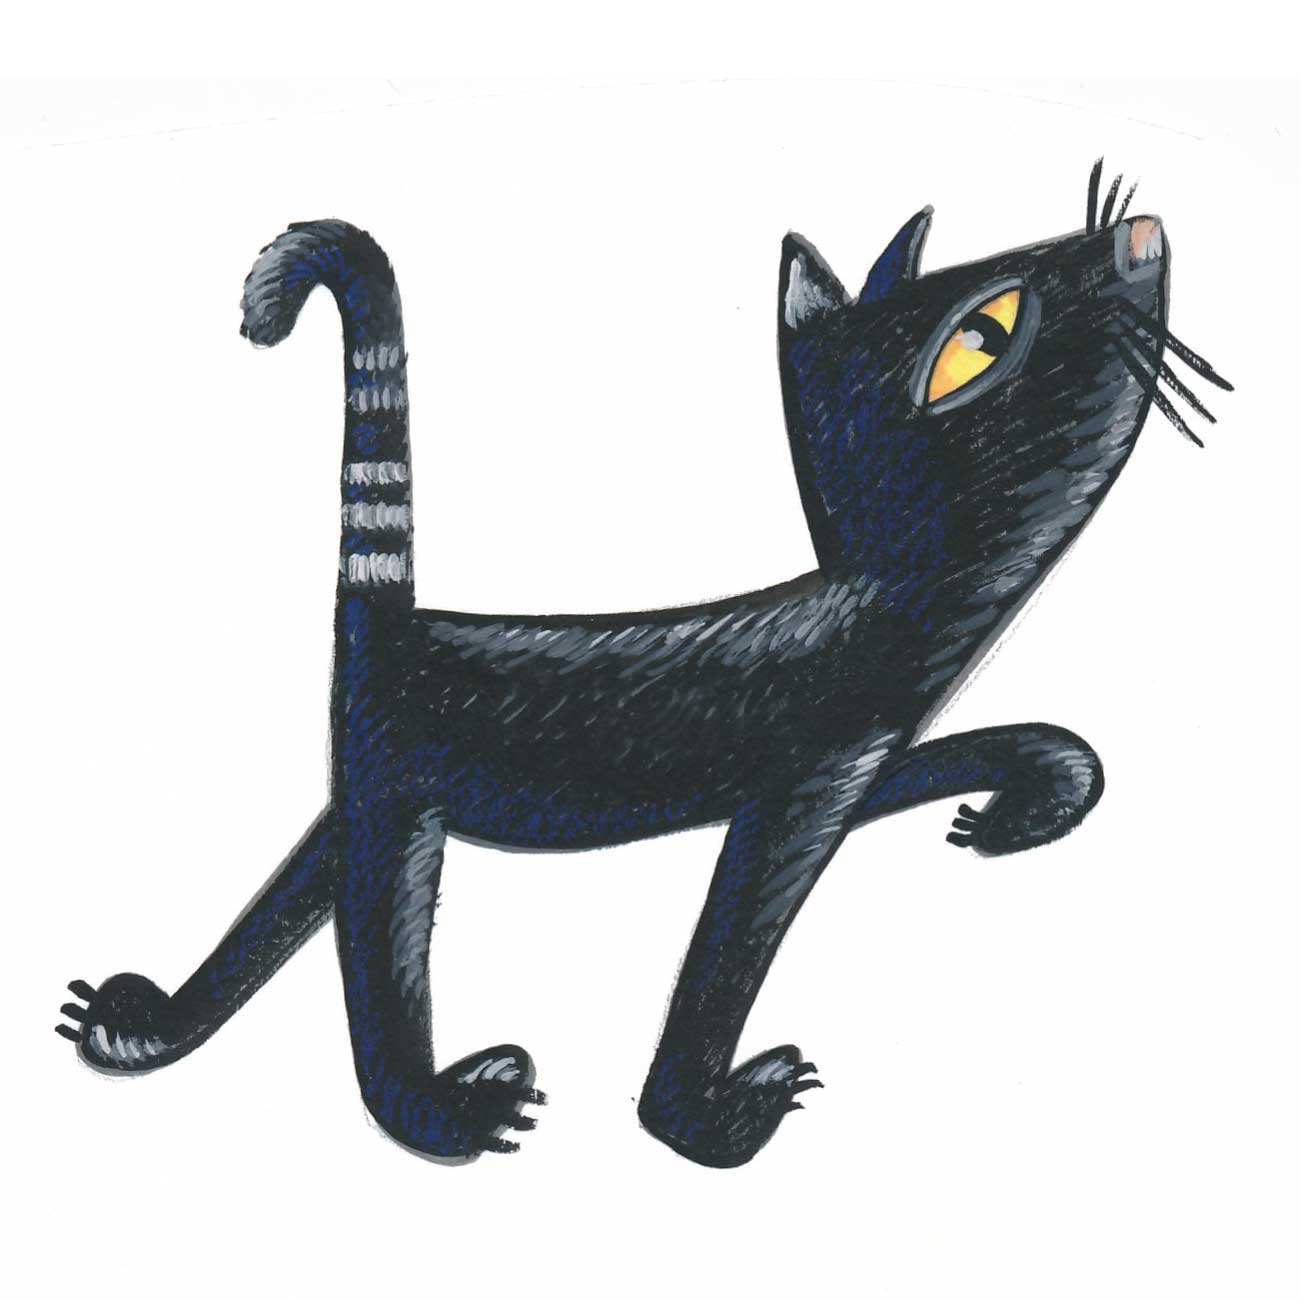 zwarte kat loopt rond